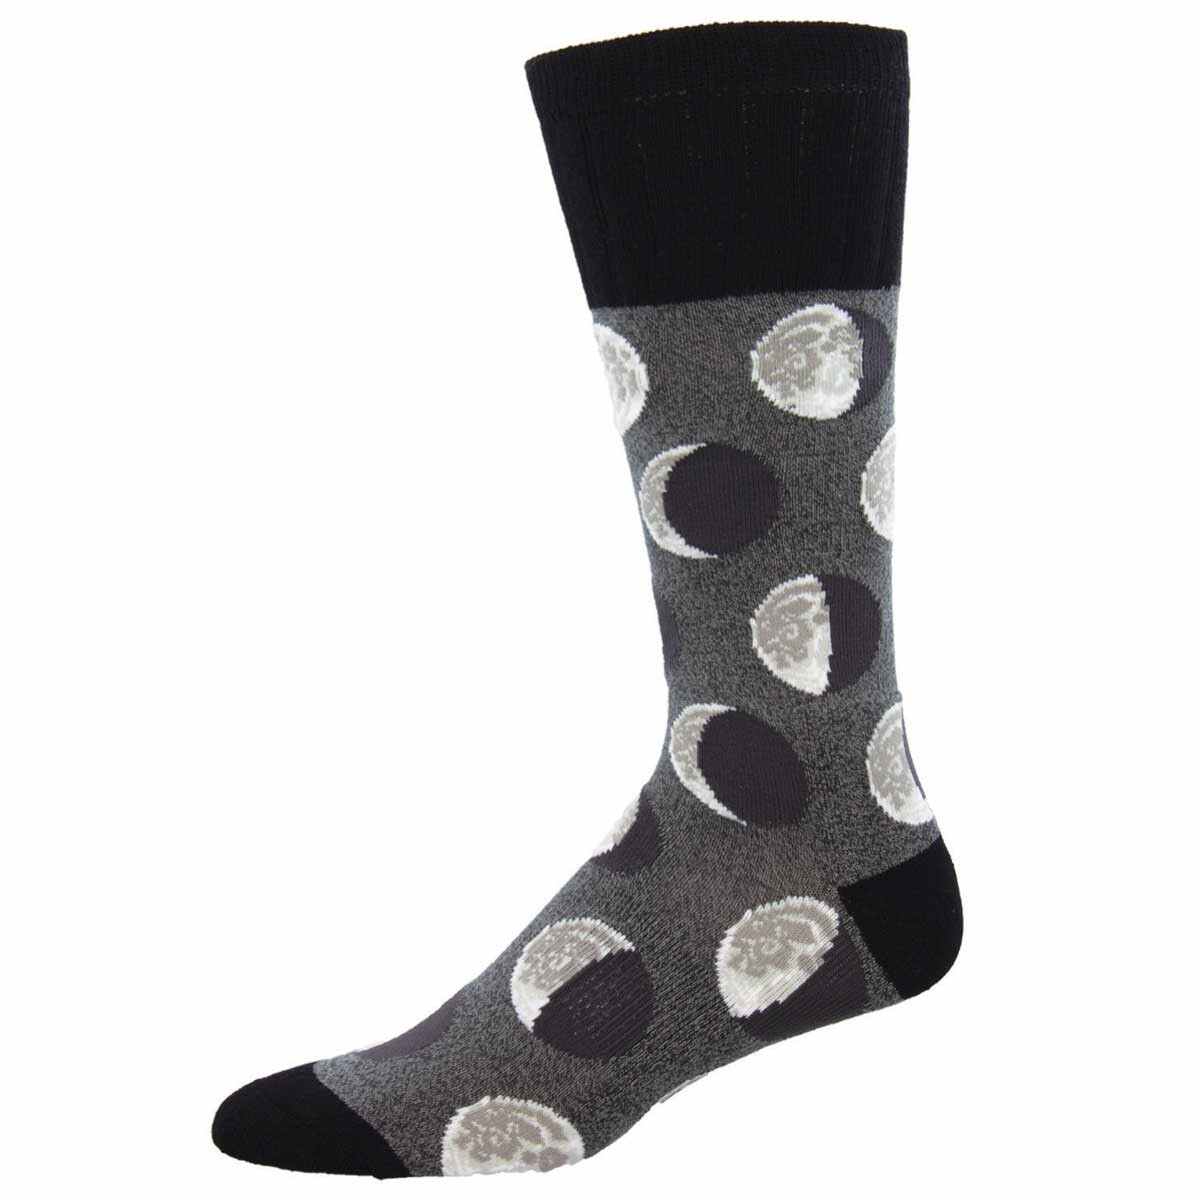 Men's Crew Socks - Multiple Designs SockSmith Sock Many Moons / 10-13